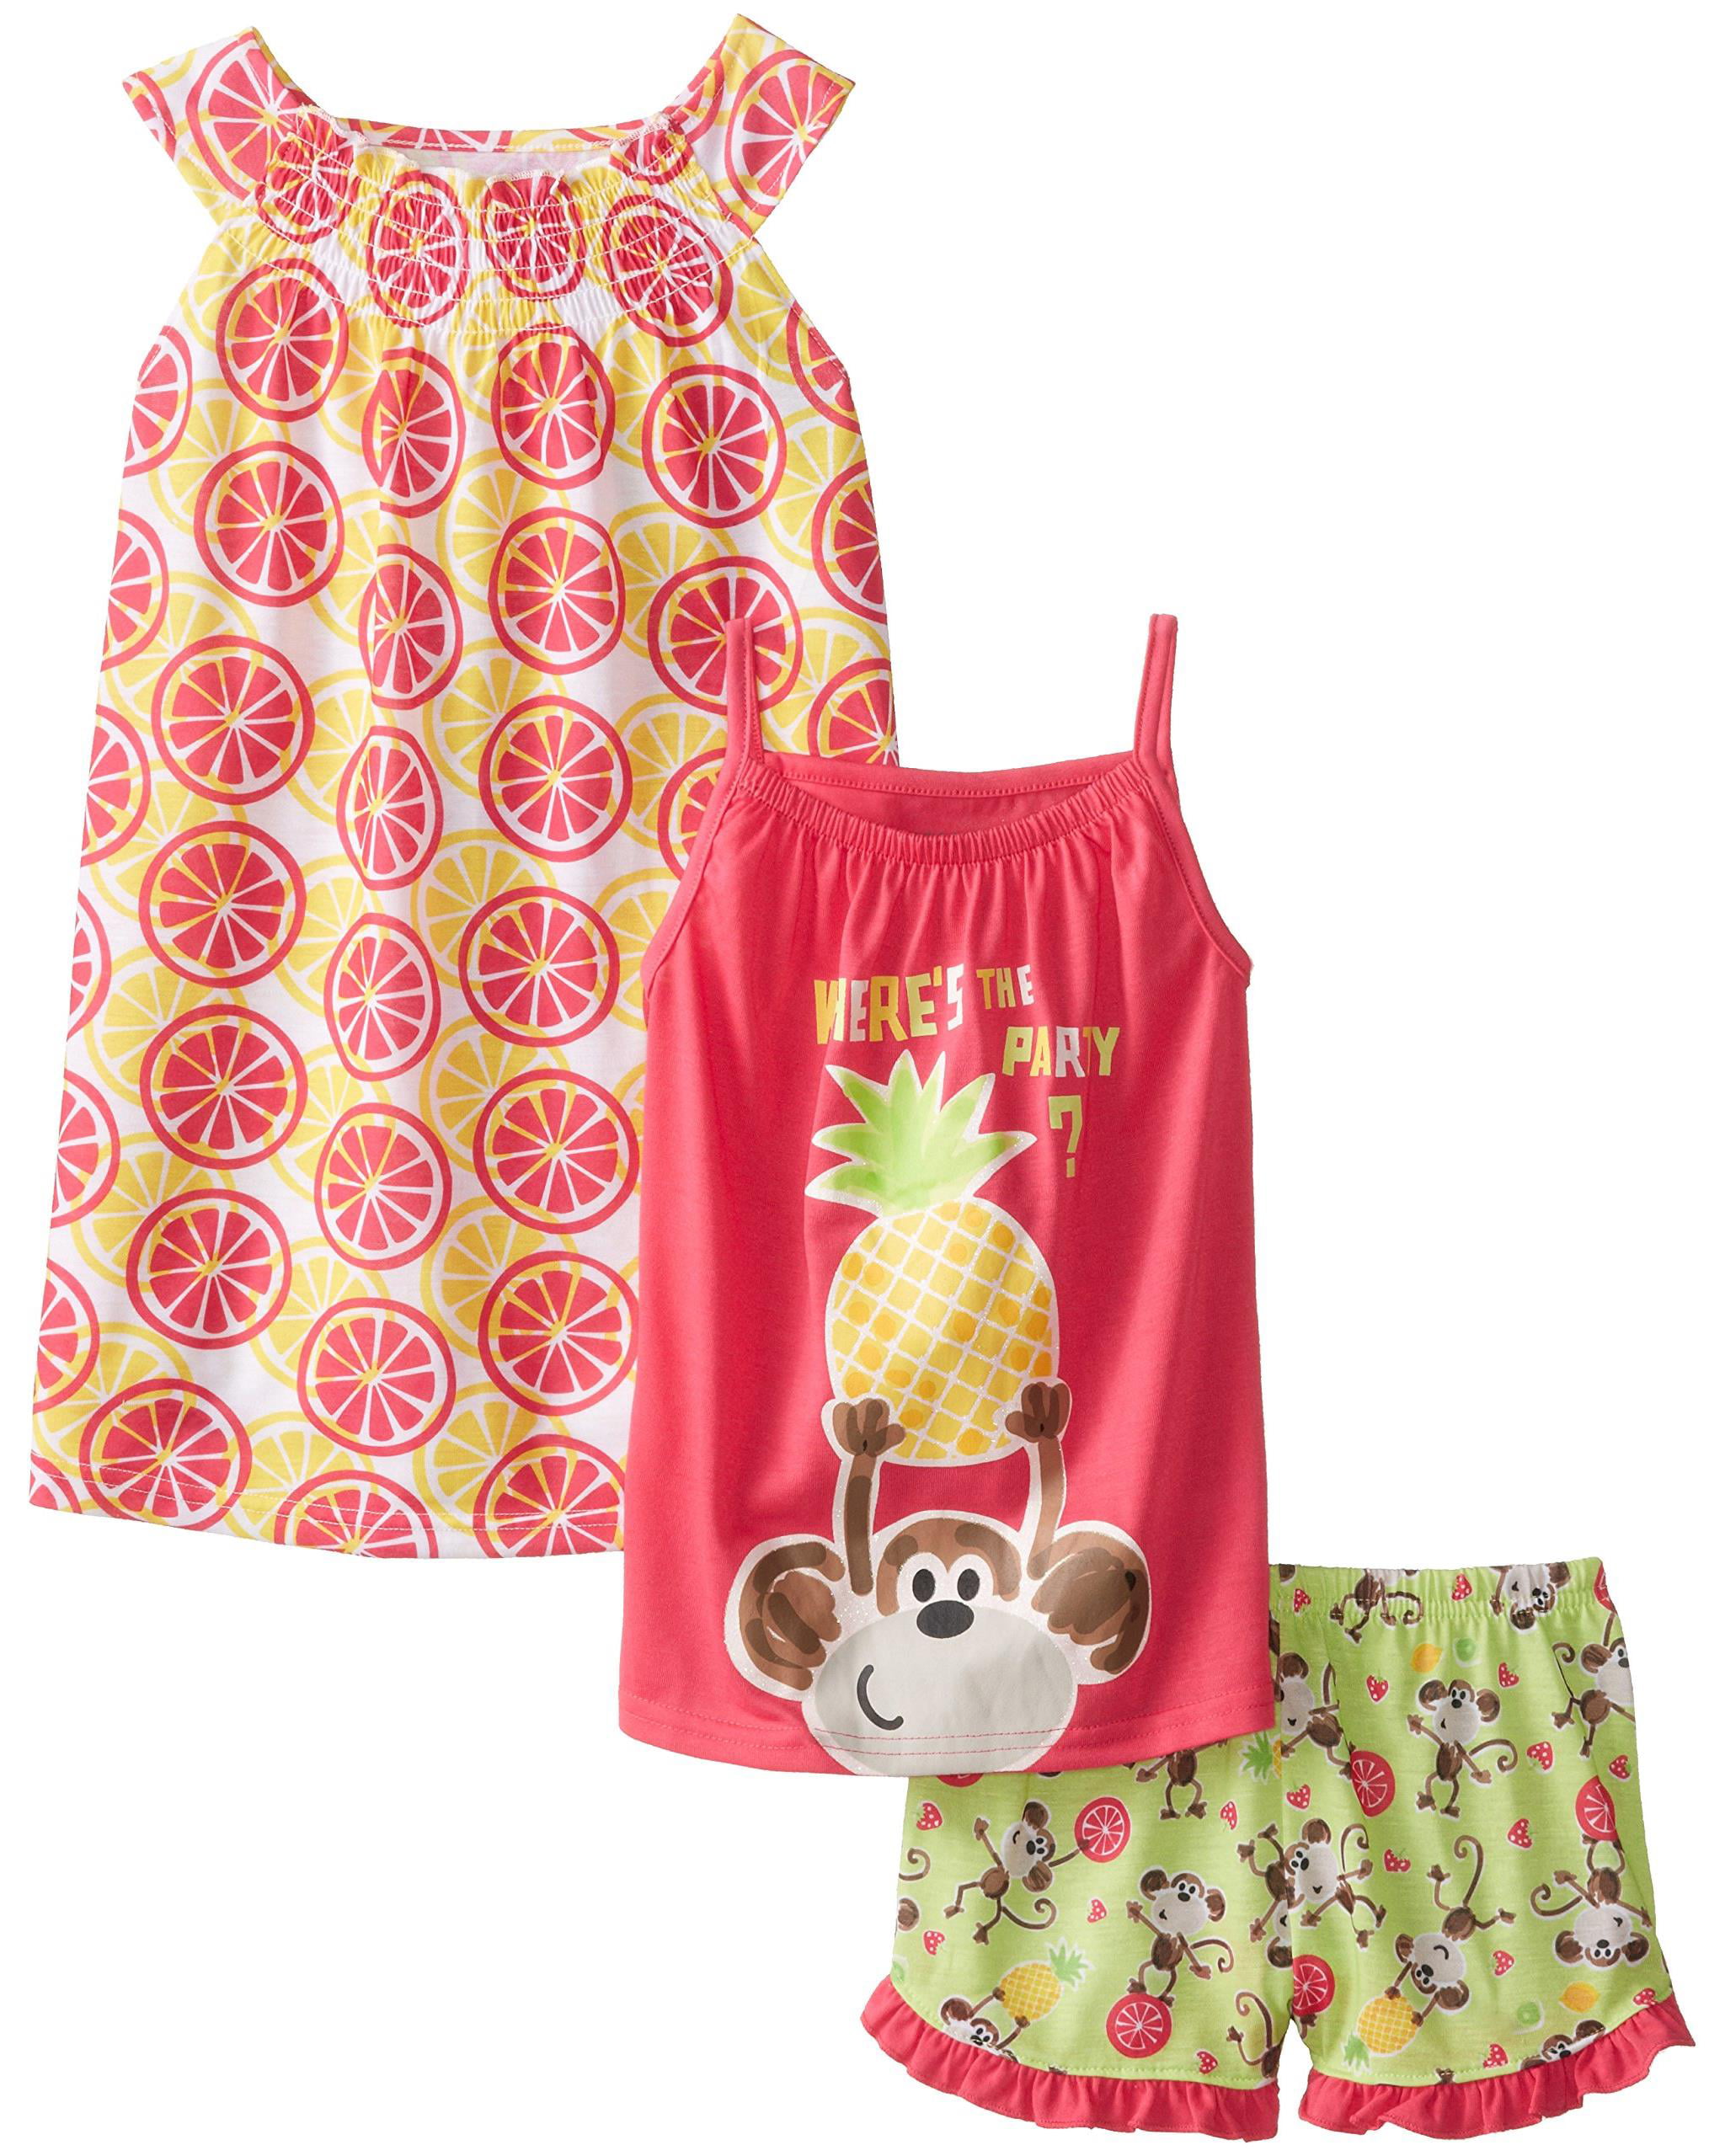 Komar Kids Girls Pajama Nightgown, Tee, Short Sleepwear Set, Pineapple ...